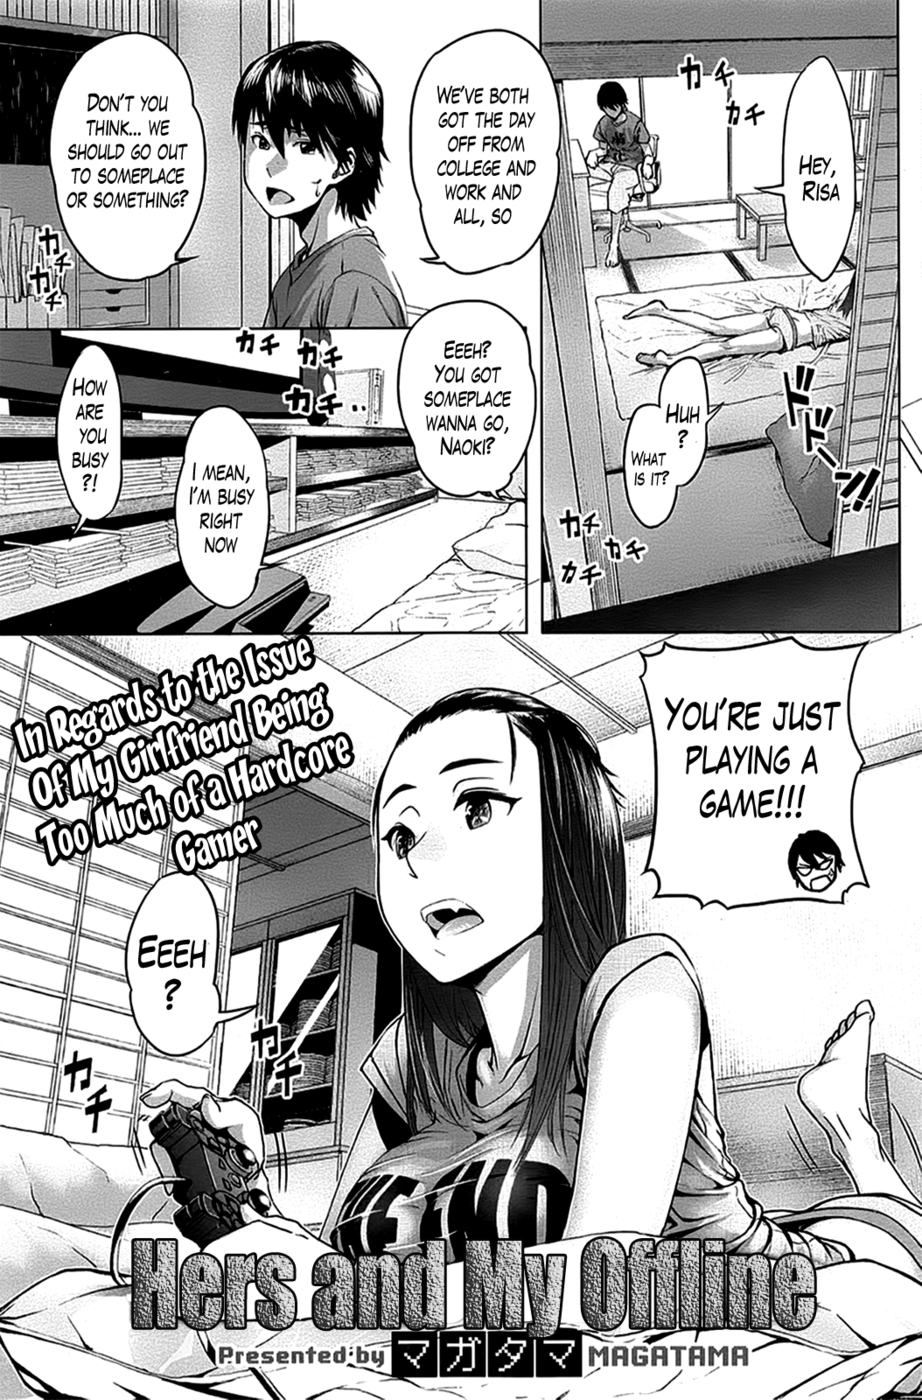 Hentai manga readers